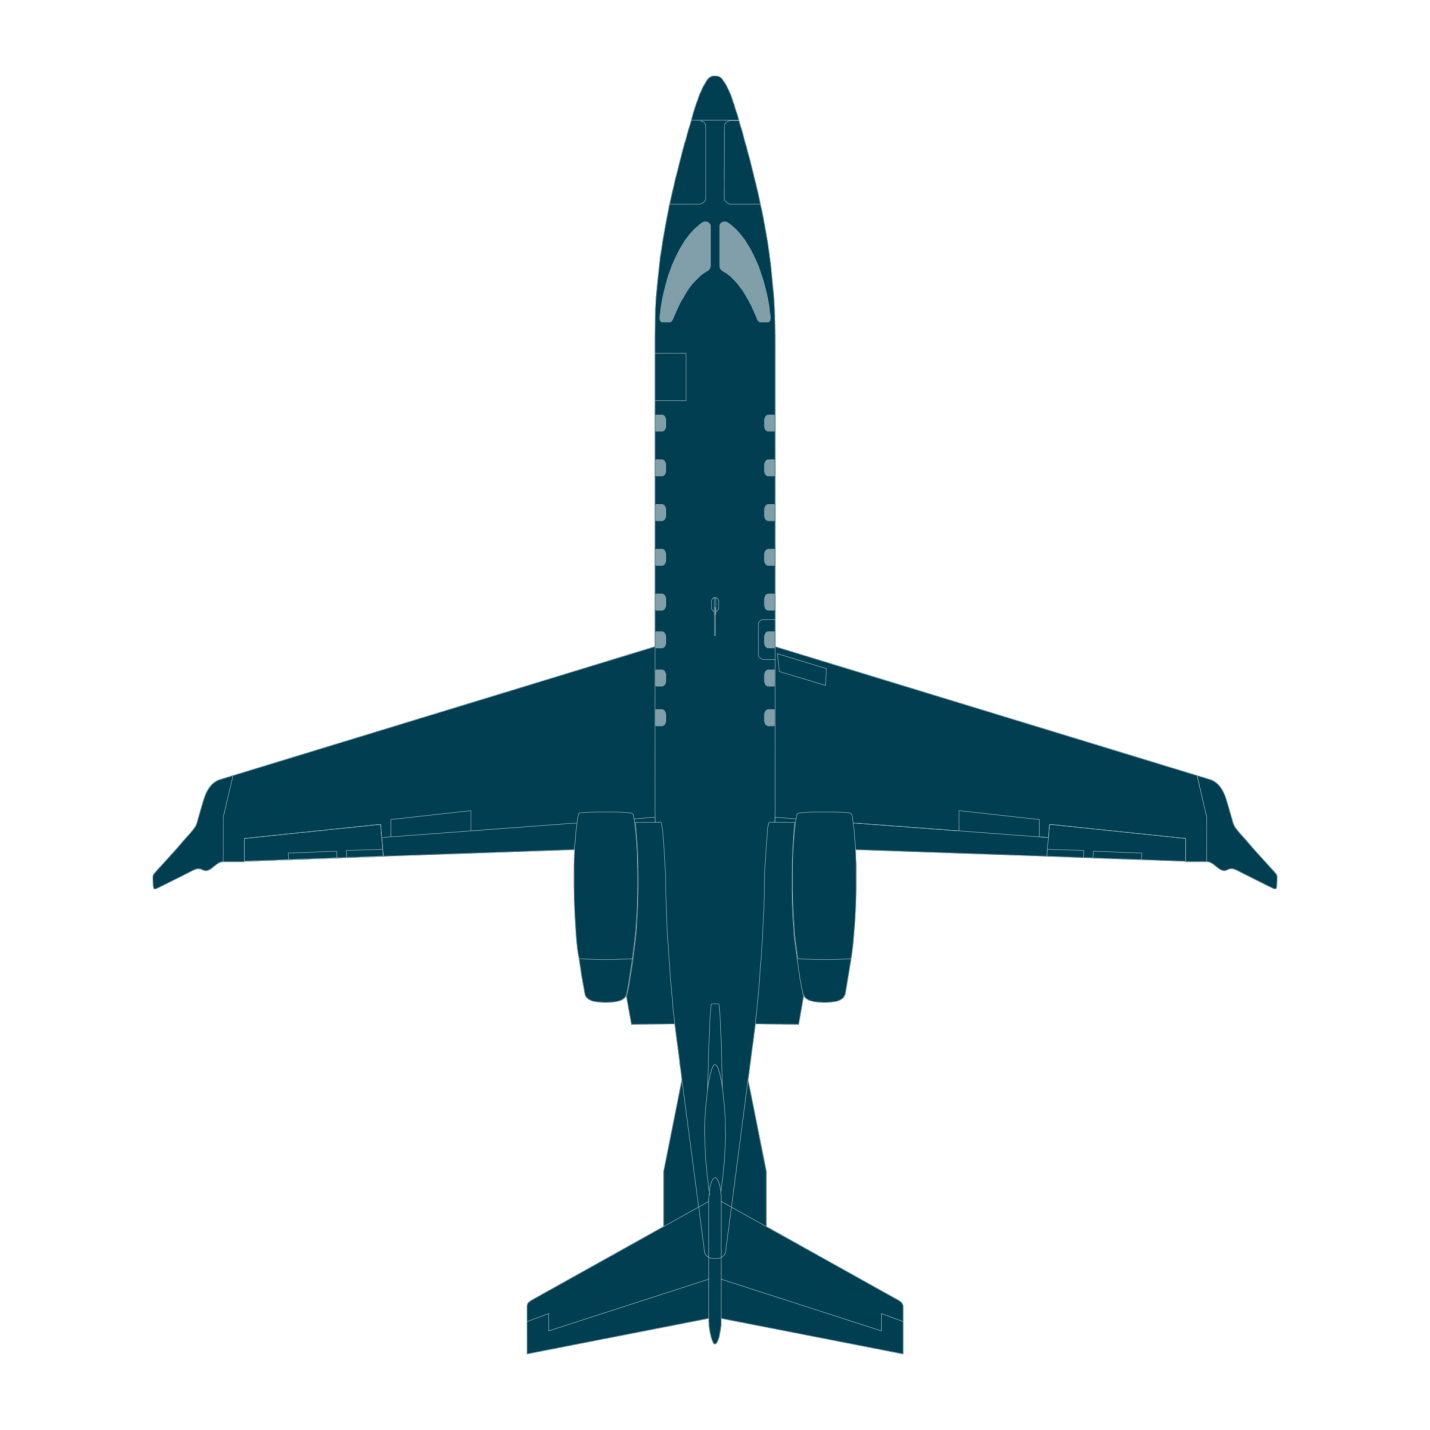 Learjet Logo